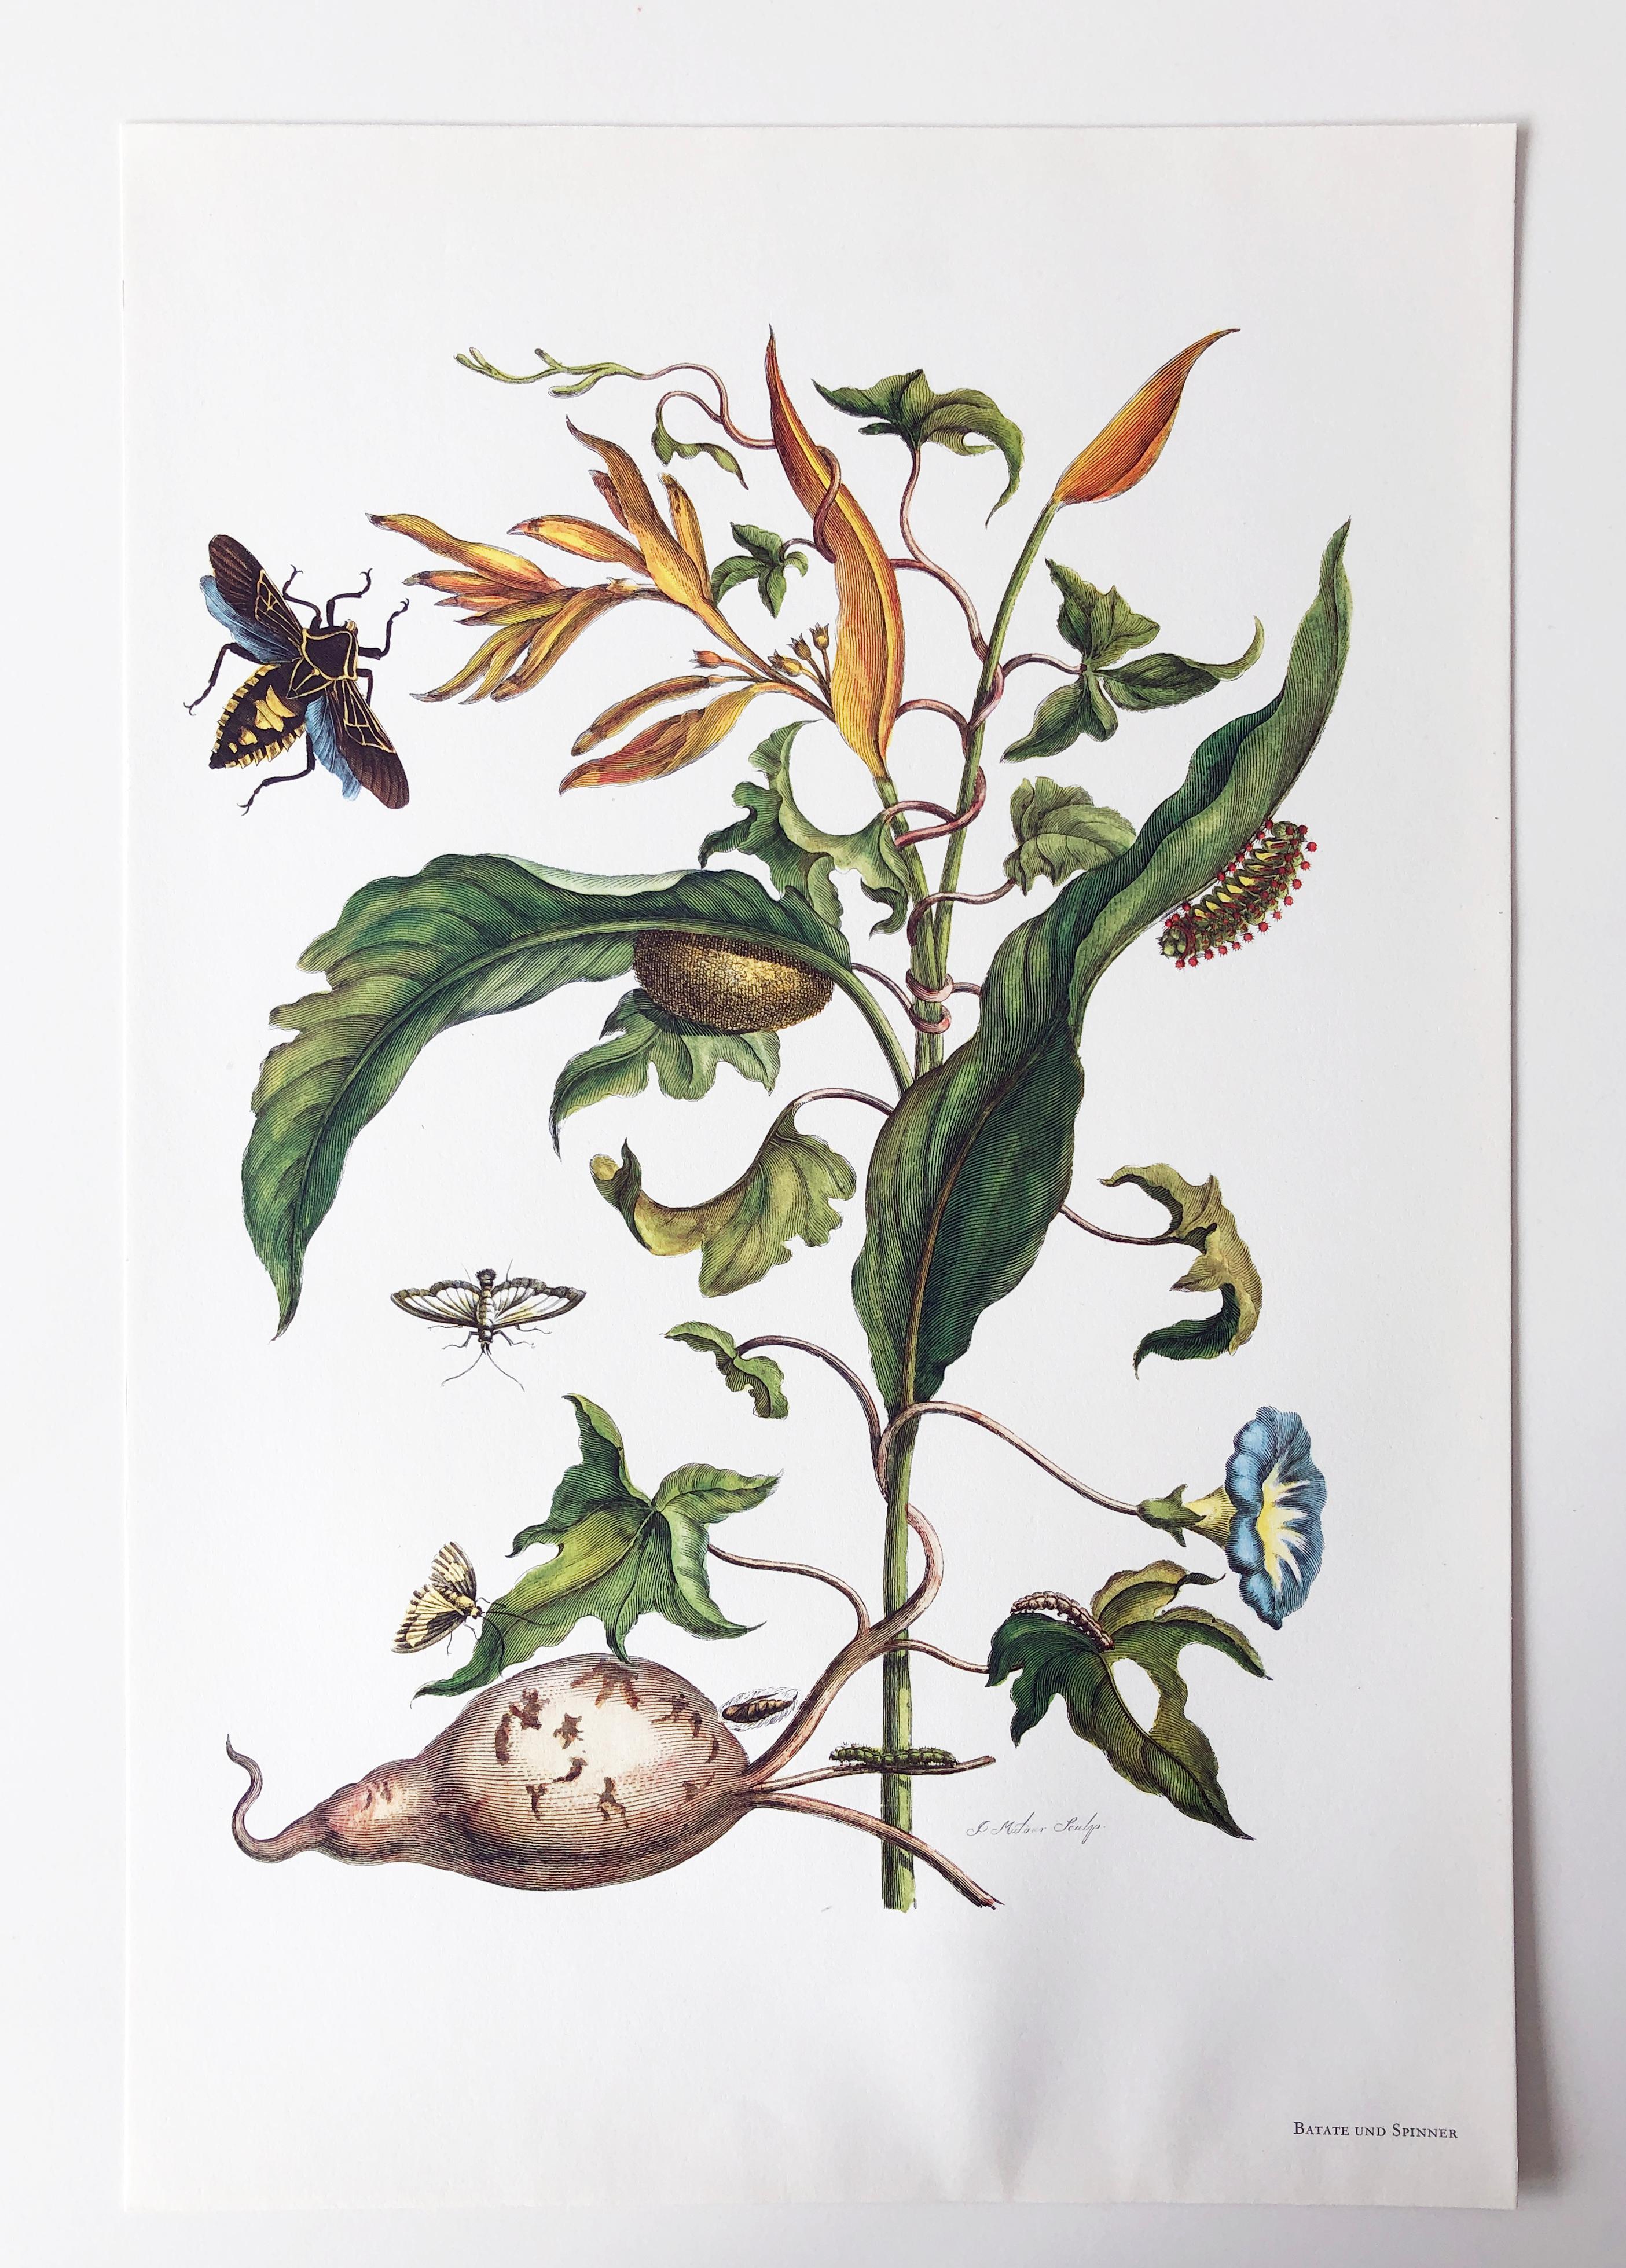 Aus Metamorphosis Insectorum Surinamensium, erstmals veröffentlicht 1705
Kupferstiche von J. Mulder, P. Sluyter (Sluiter) und D. Stoopendaal nach Maria Sybilla Merian.

Dieser Teller ist Teil einer umfassenden Sammlung von 17 Tellern. 
Ich habe eine